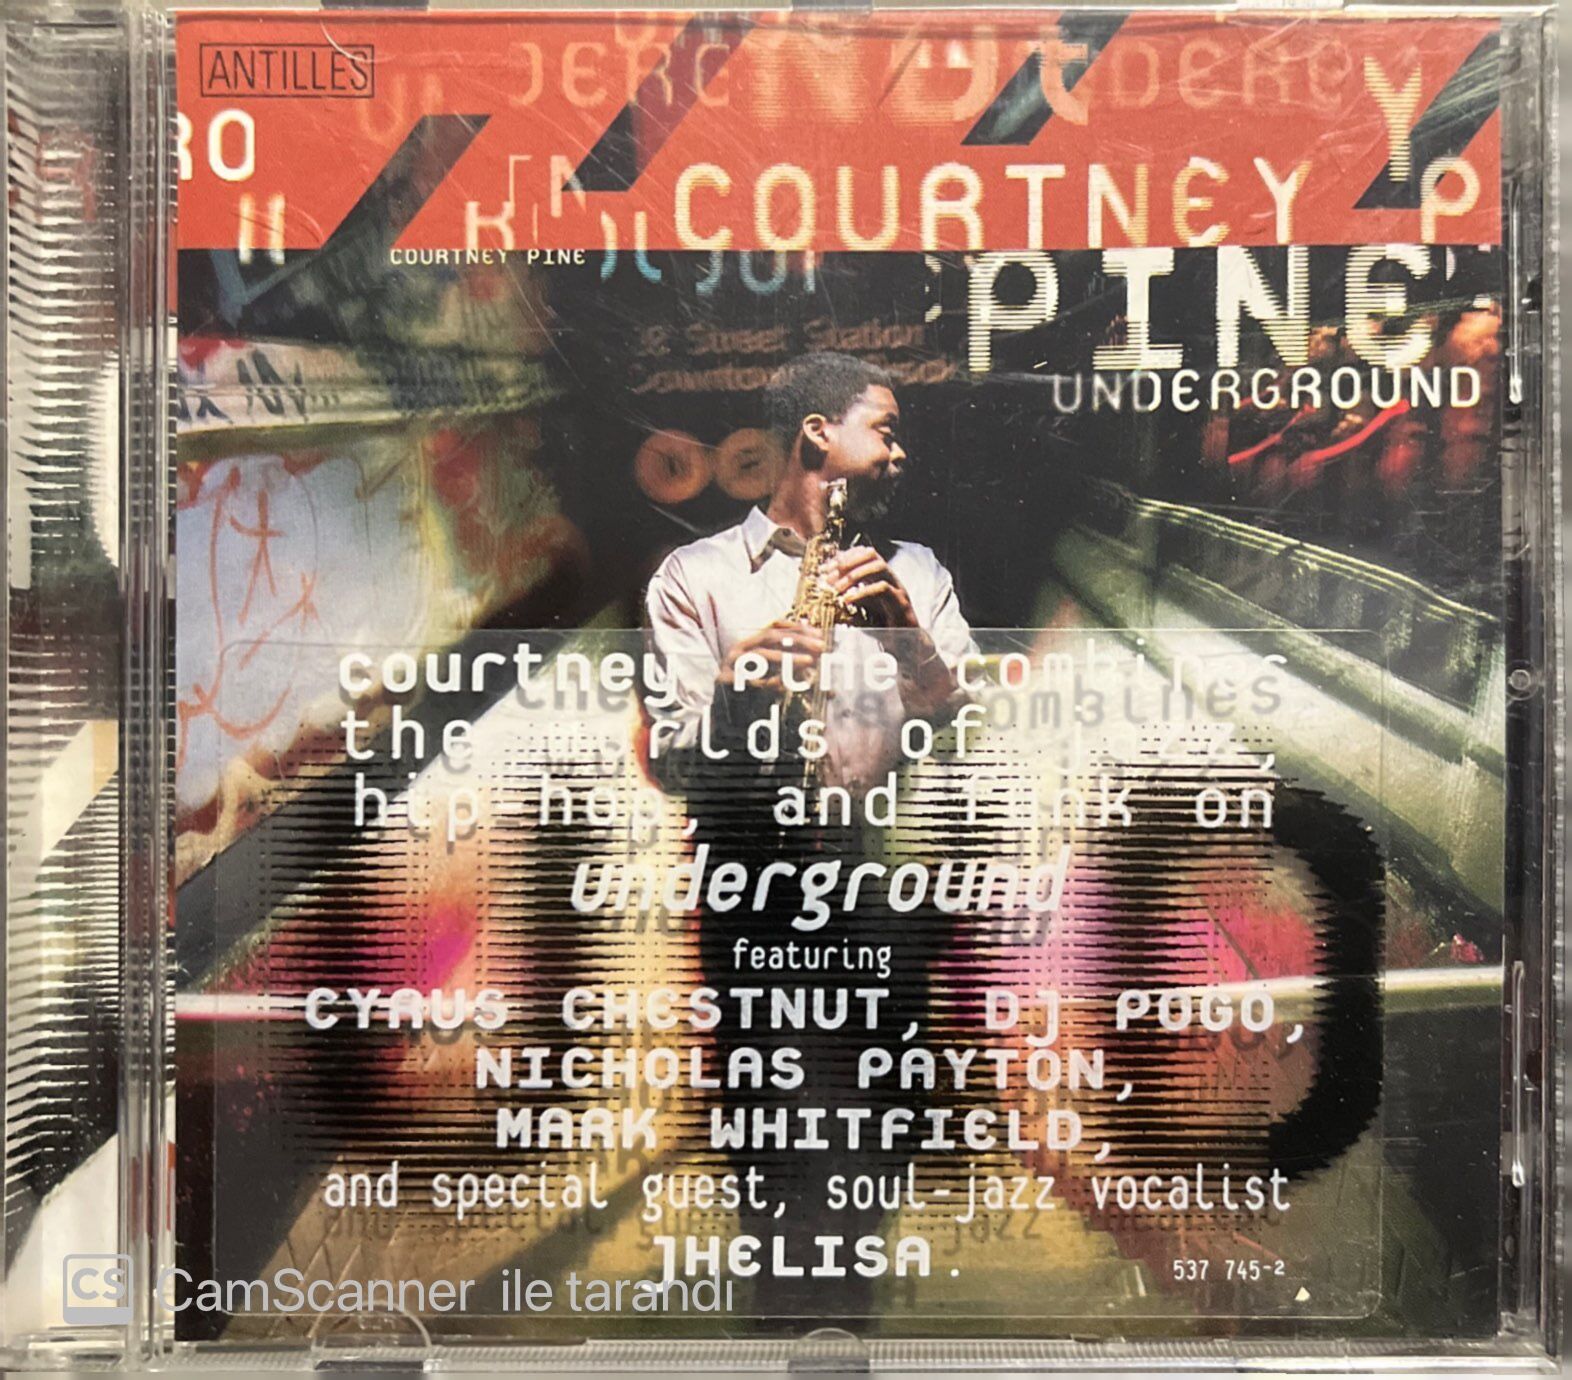 COURTNY PINE UNDERGROUND_LP - 洋楽